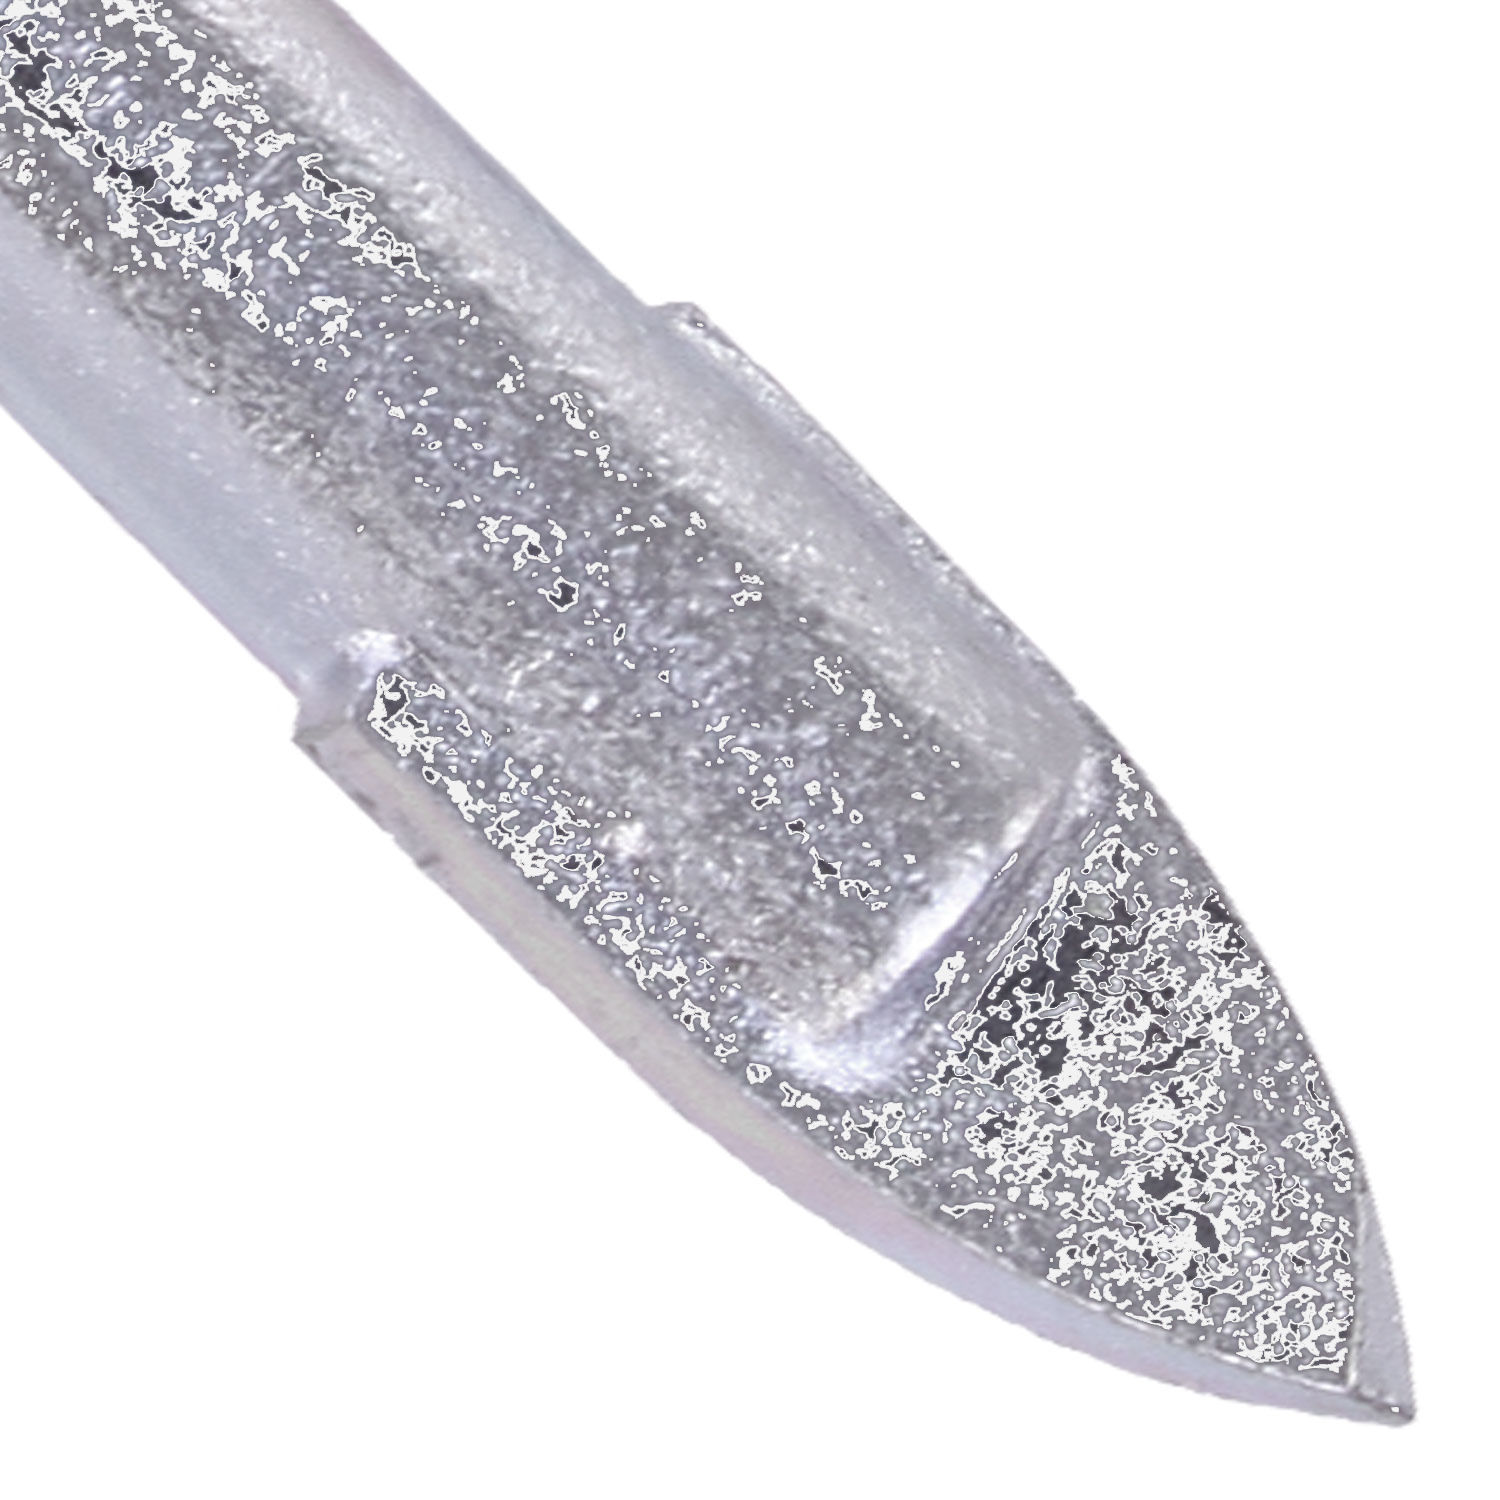 1 KEIL Glasbohrer Ø = 3mm, Länge = 58mm - diamantgeschliffene Hartmetallplatte